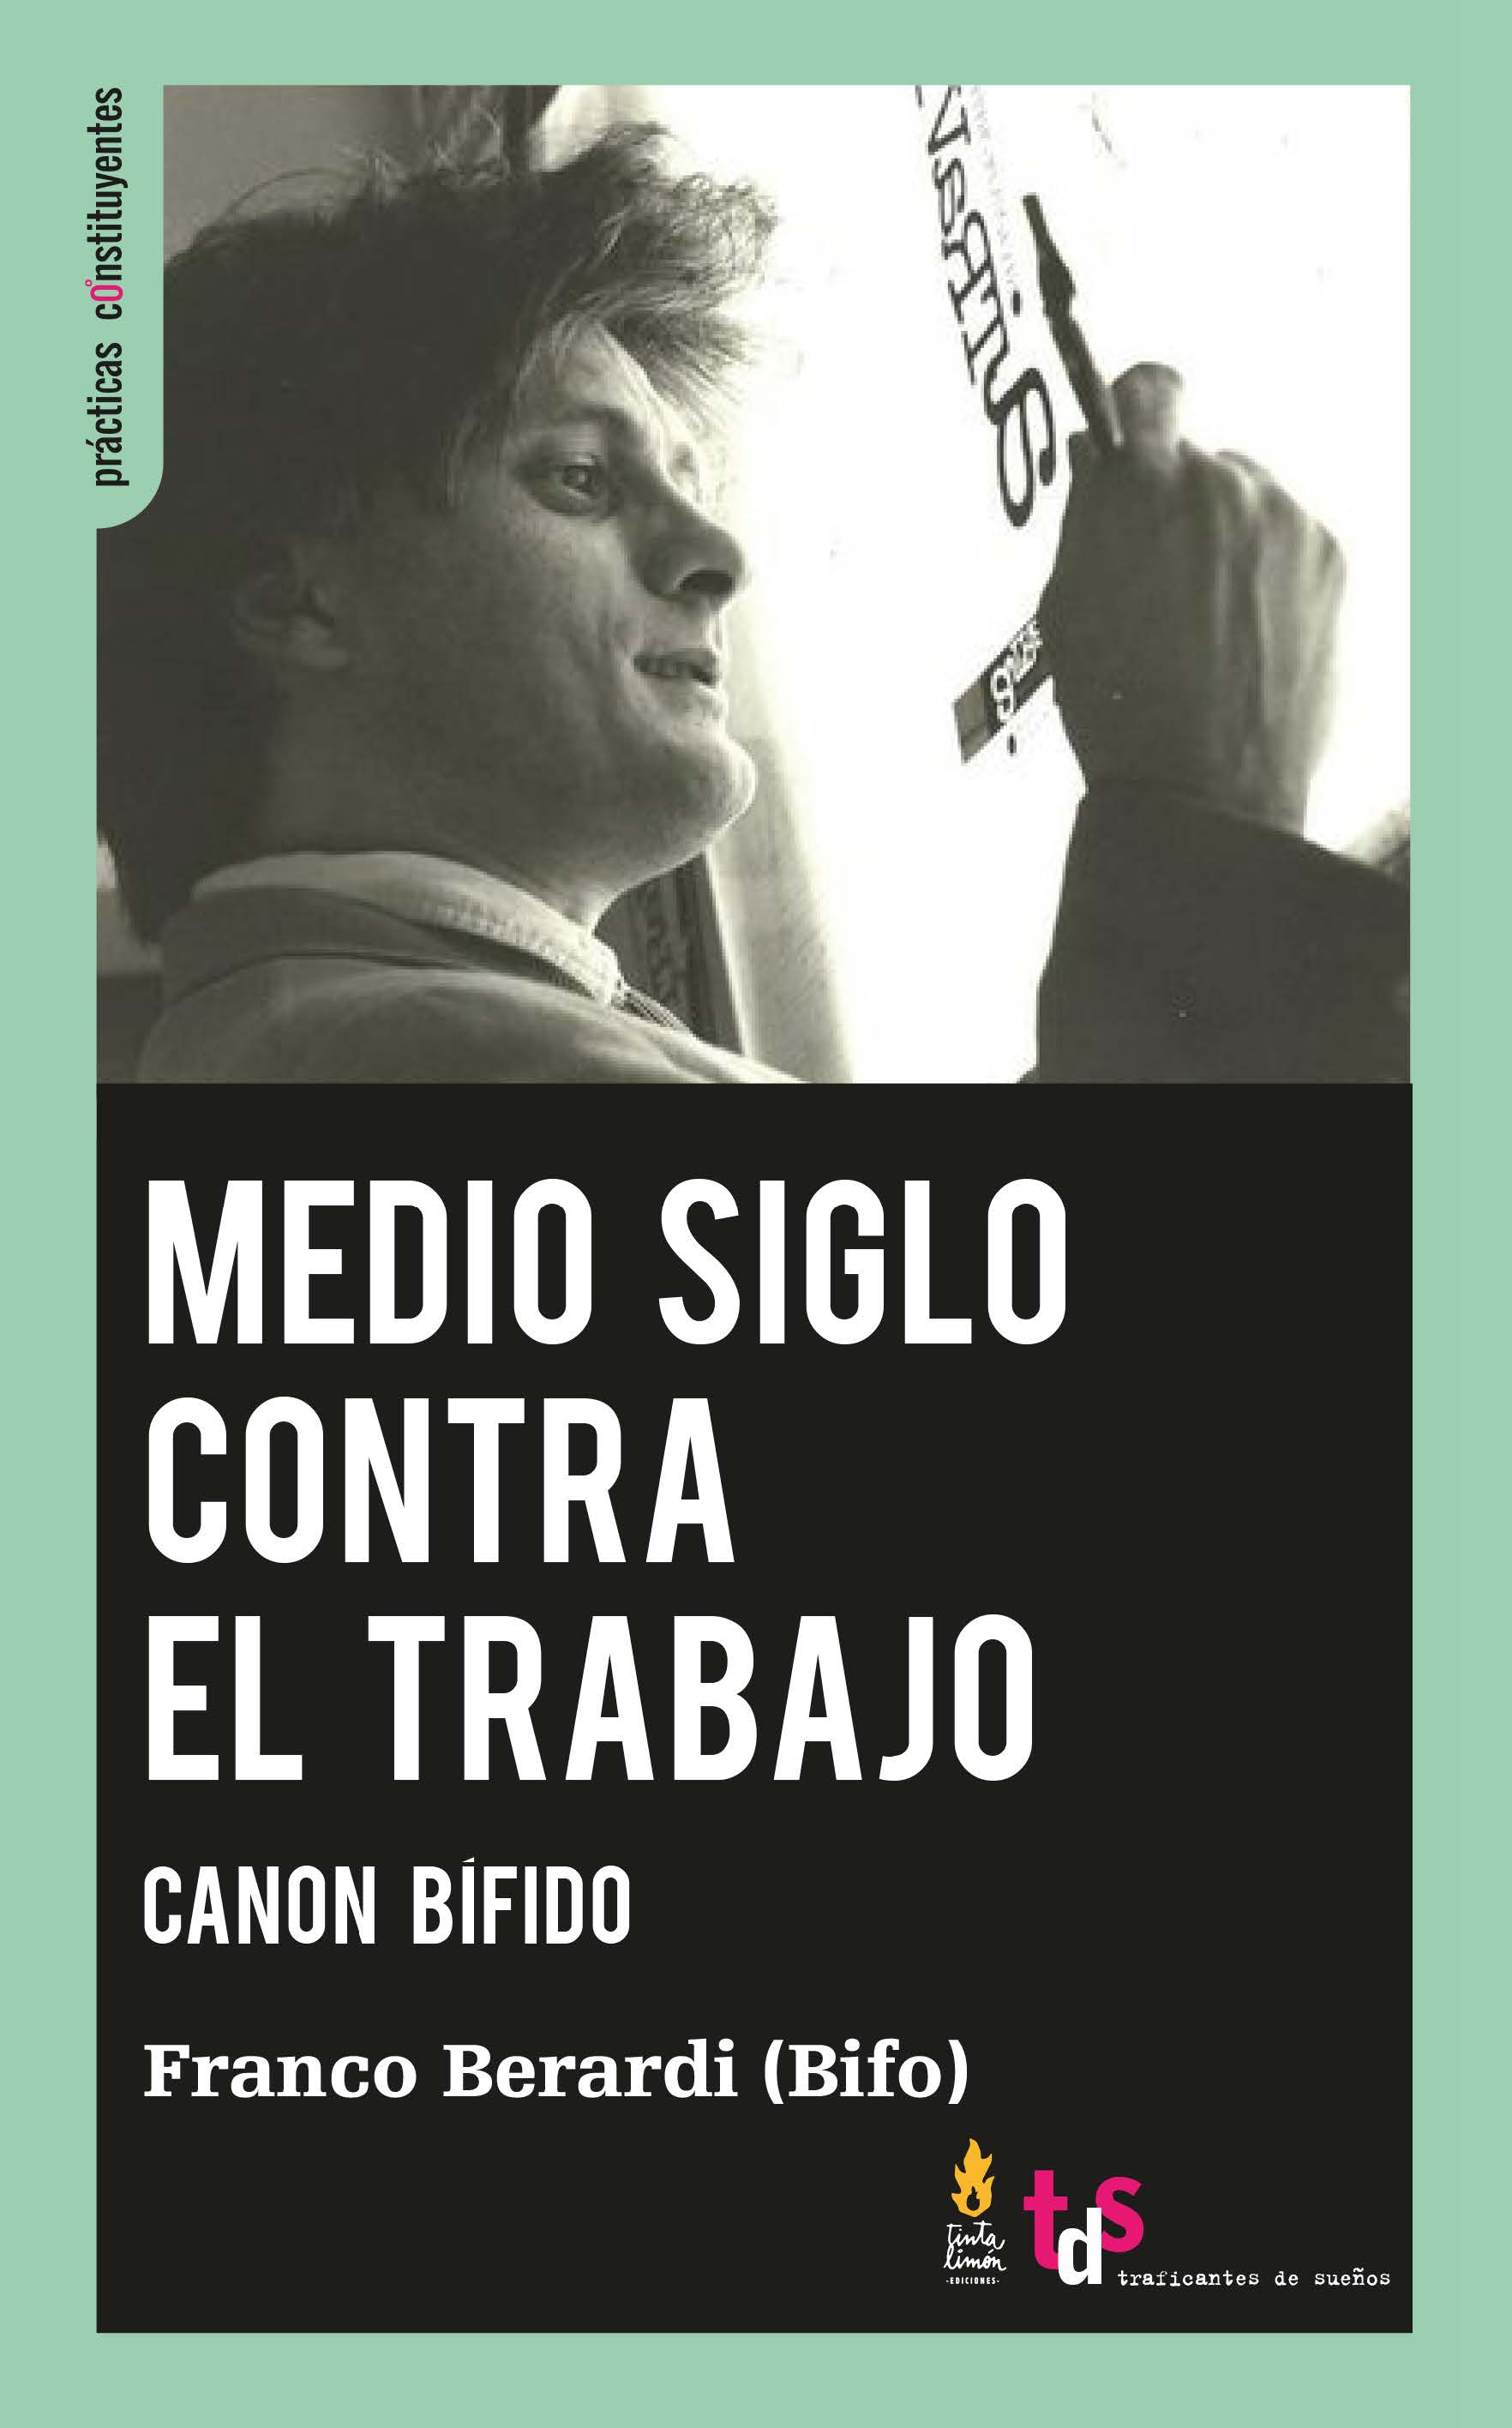 MEDIO SIGLO CONTRA EL TRABAJO - Franco Berardi (Bifo)